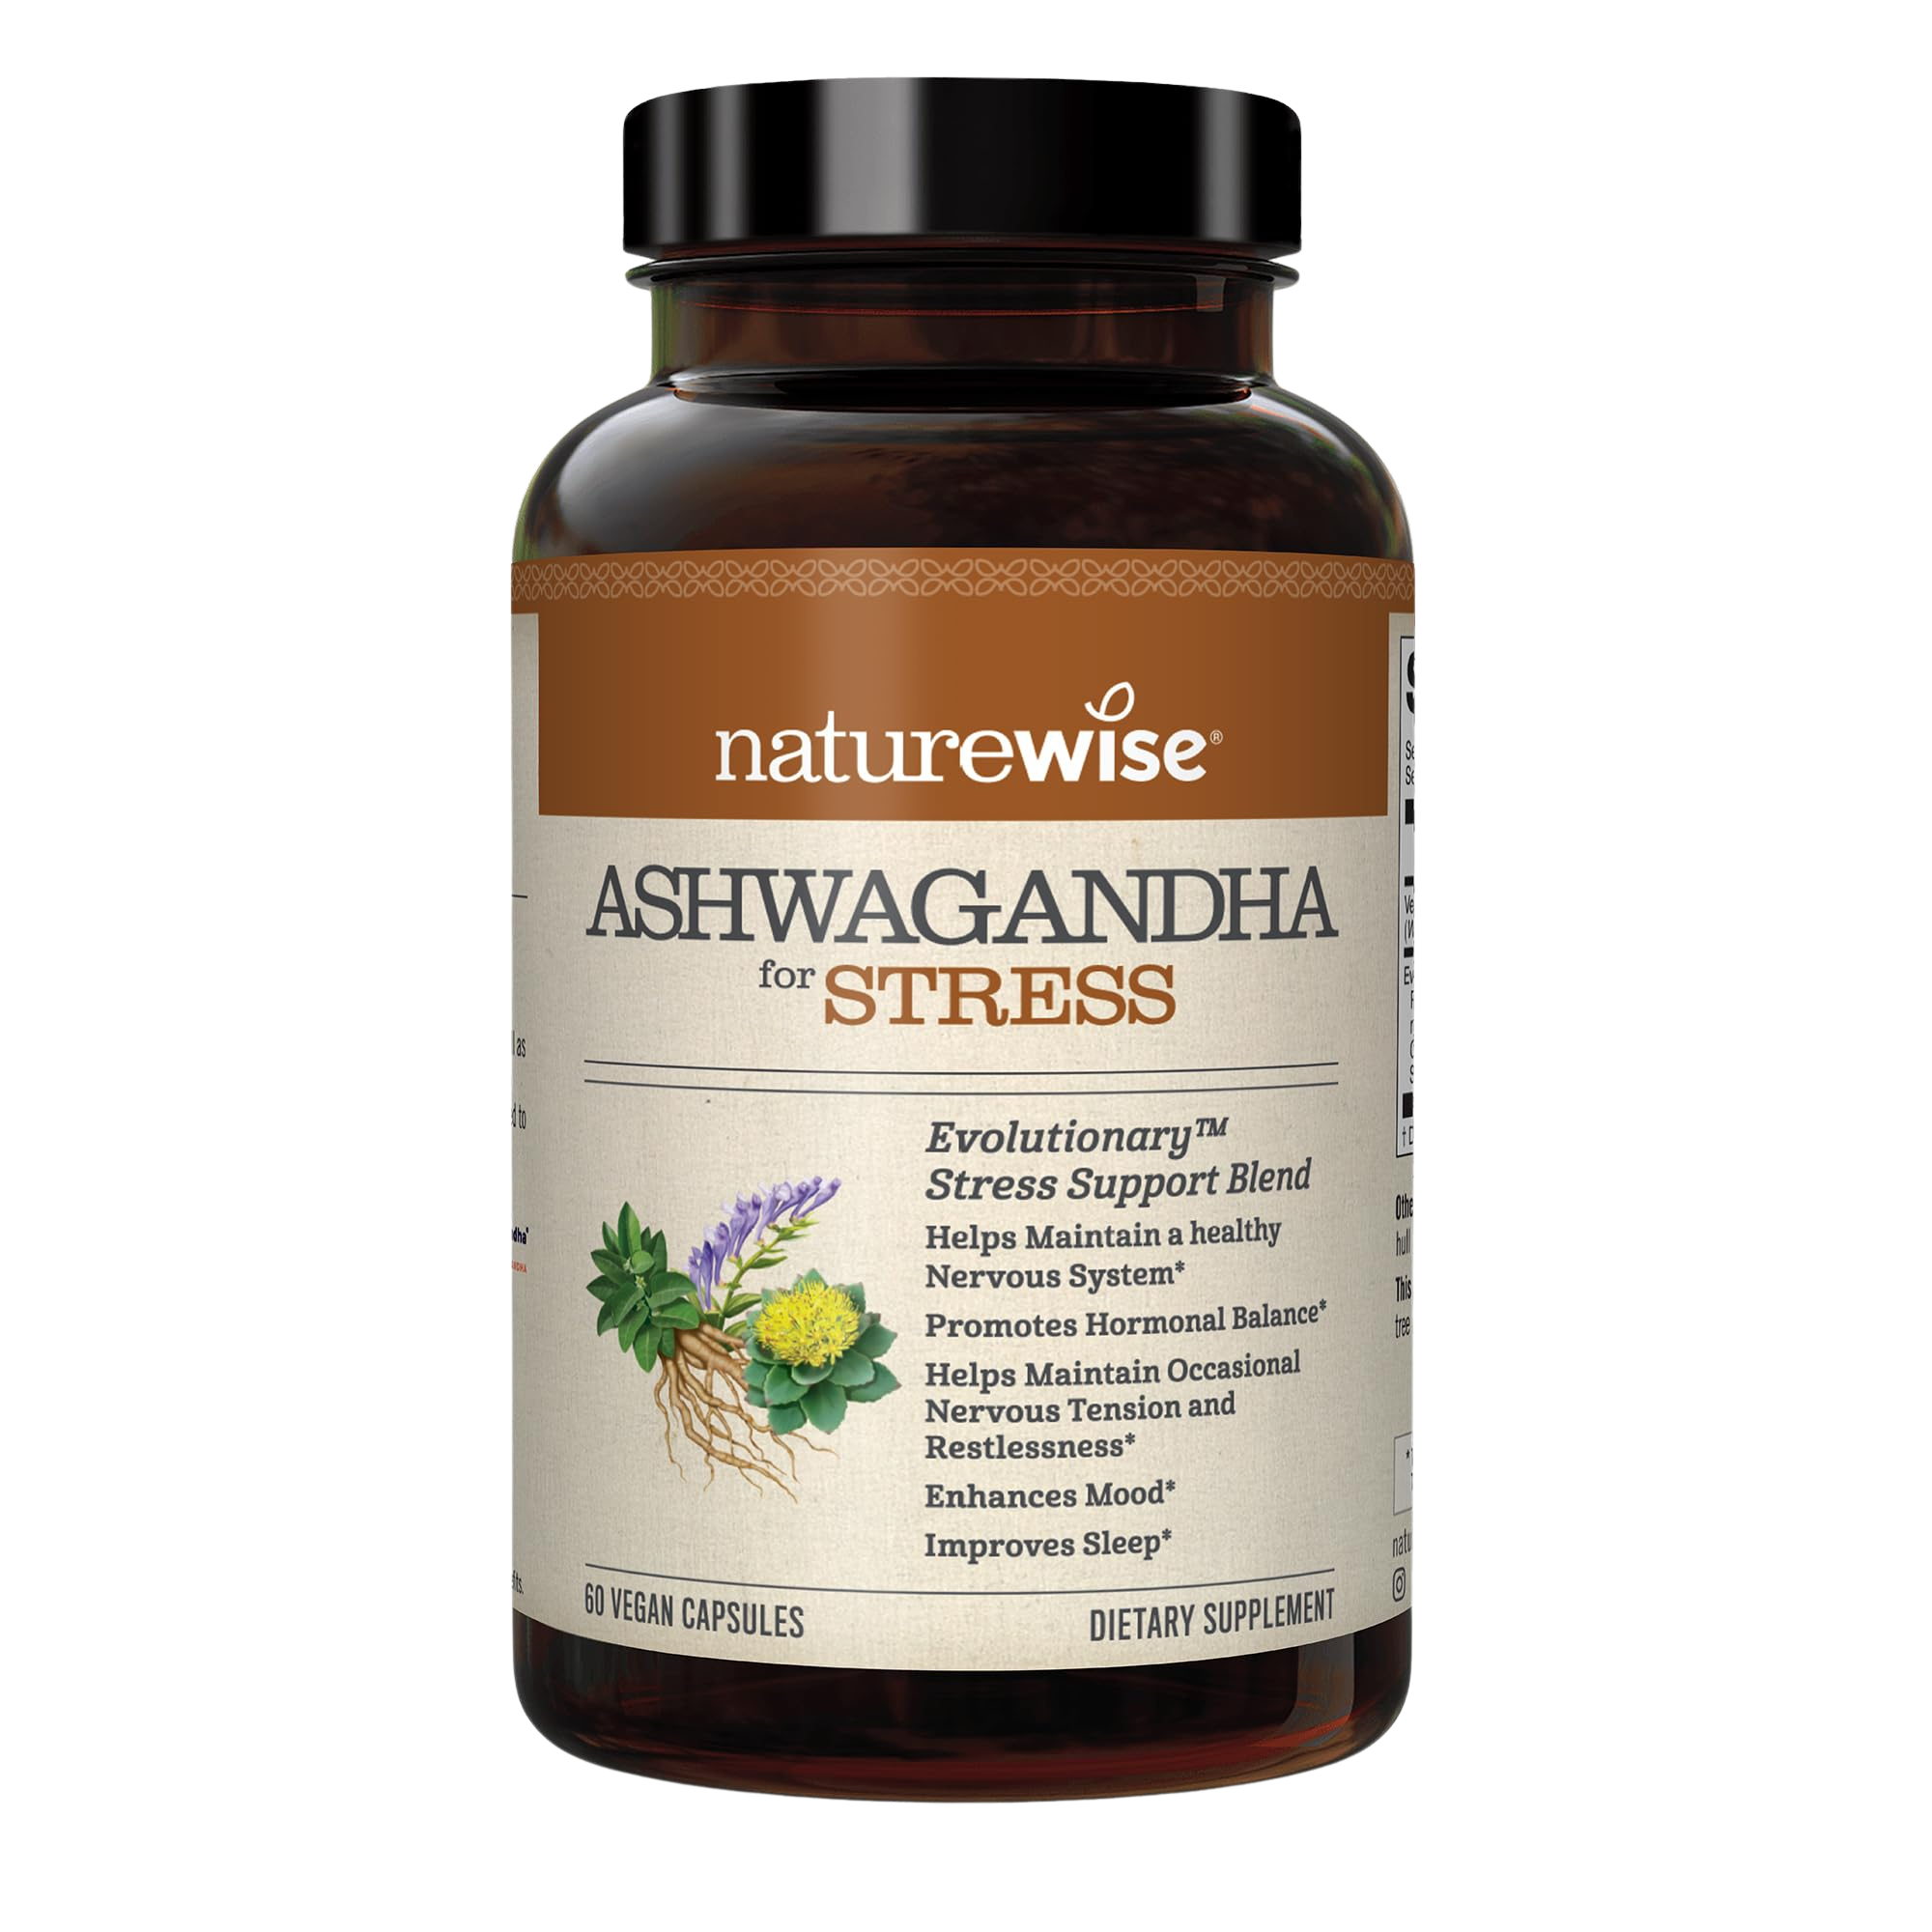 NatureWise Ashwagandha for Stress | Calming KSM-66 Herbal Supplement Extract + GABA